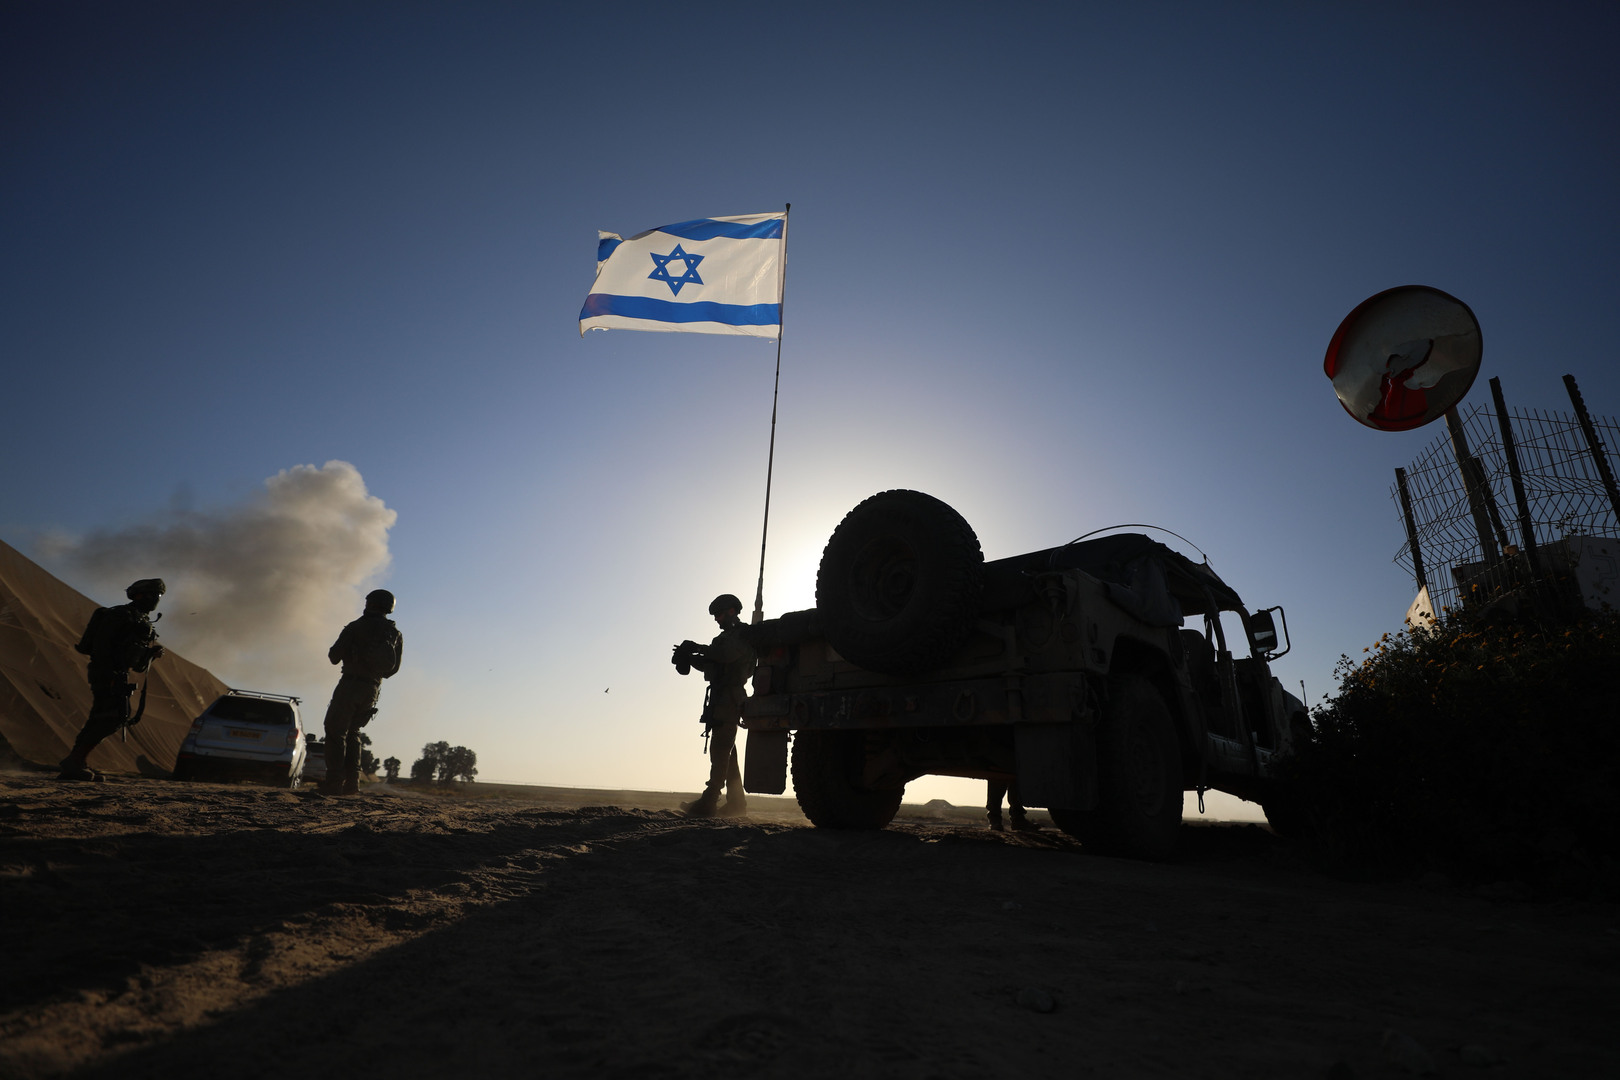 أخطأنا في تحديد هويتهم.. الجيش الإسرائيلي يعلق على استهداف فريق الإغاثة الدولي في غزة (فيديو)